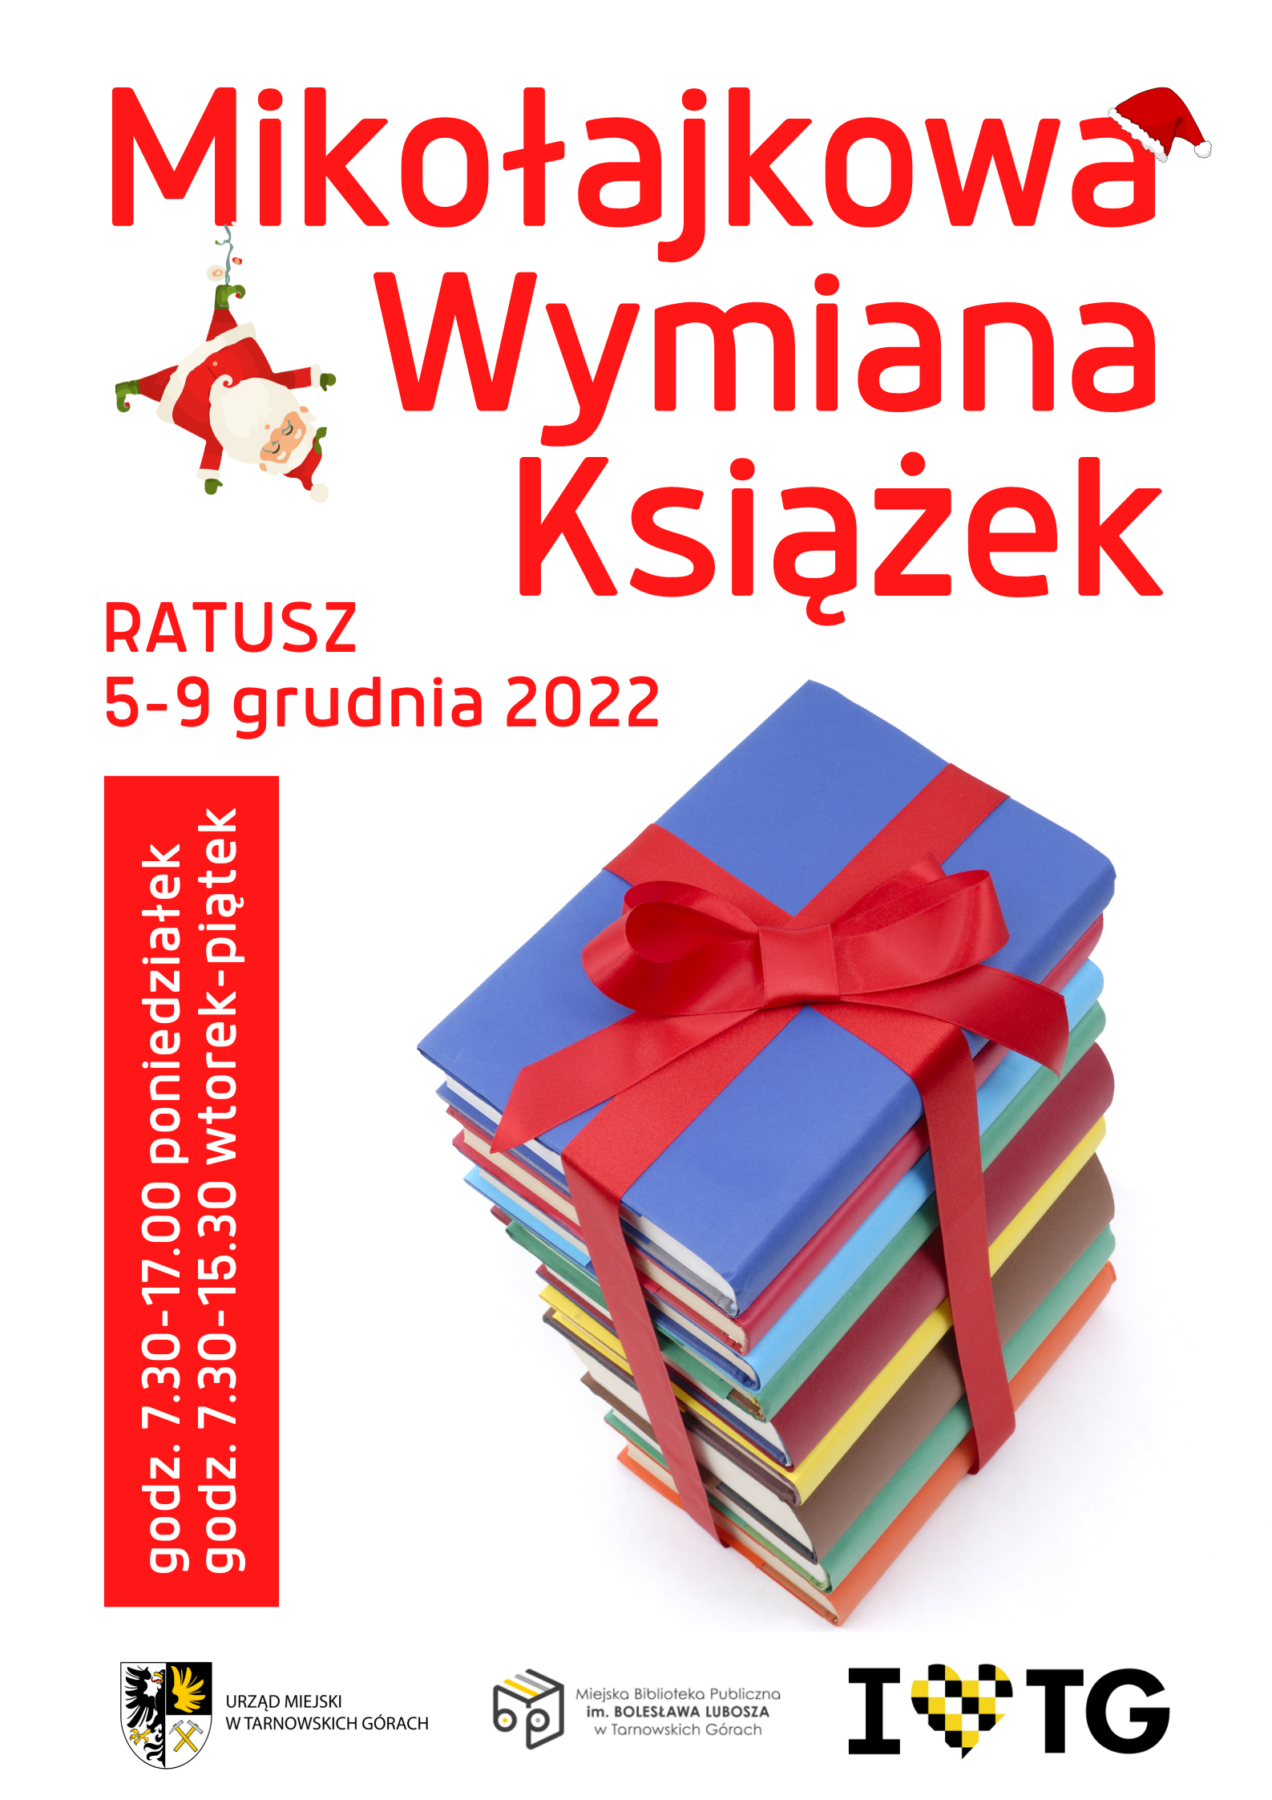 Mikołajkowa Wymiana książek 5-9.12.22 r. - plakat